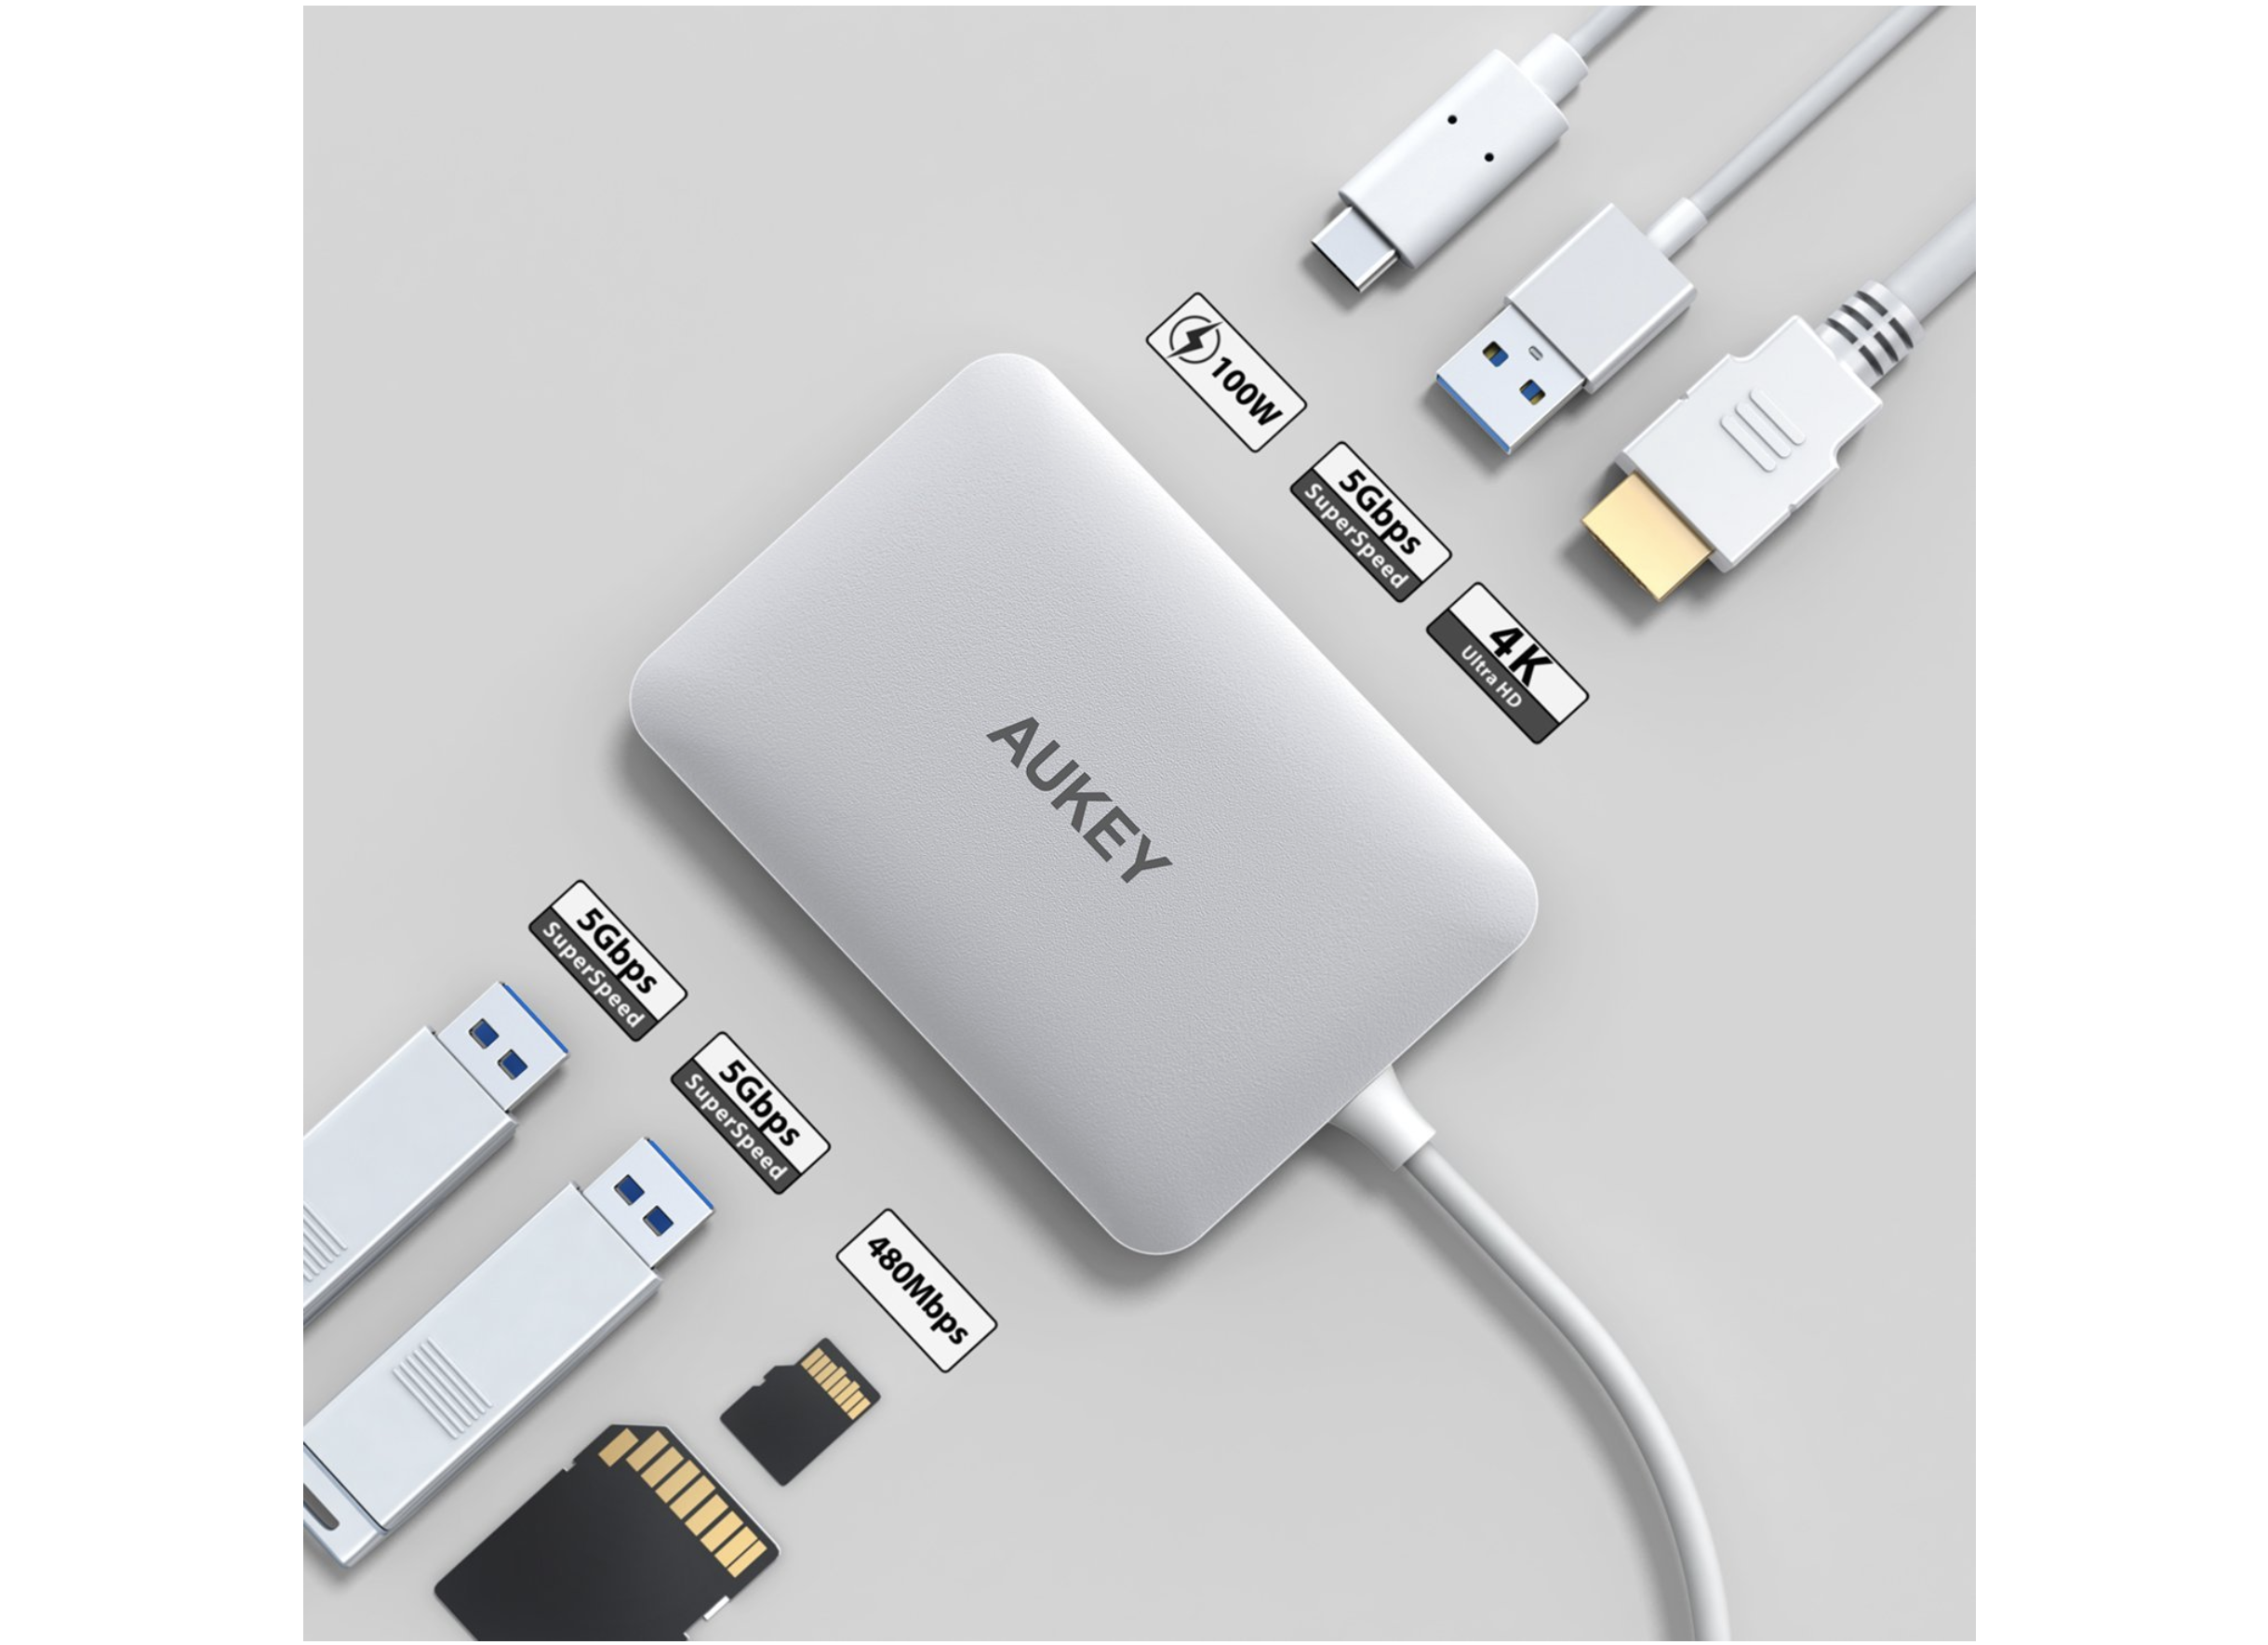 [Amazon]MacBook Pro 15 で周辺機器接続を容易にするために「AUKEY USB C ハブ 7 in 1 マルチハブ」を購入したよ